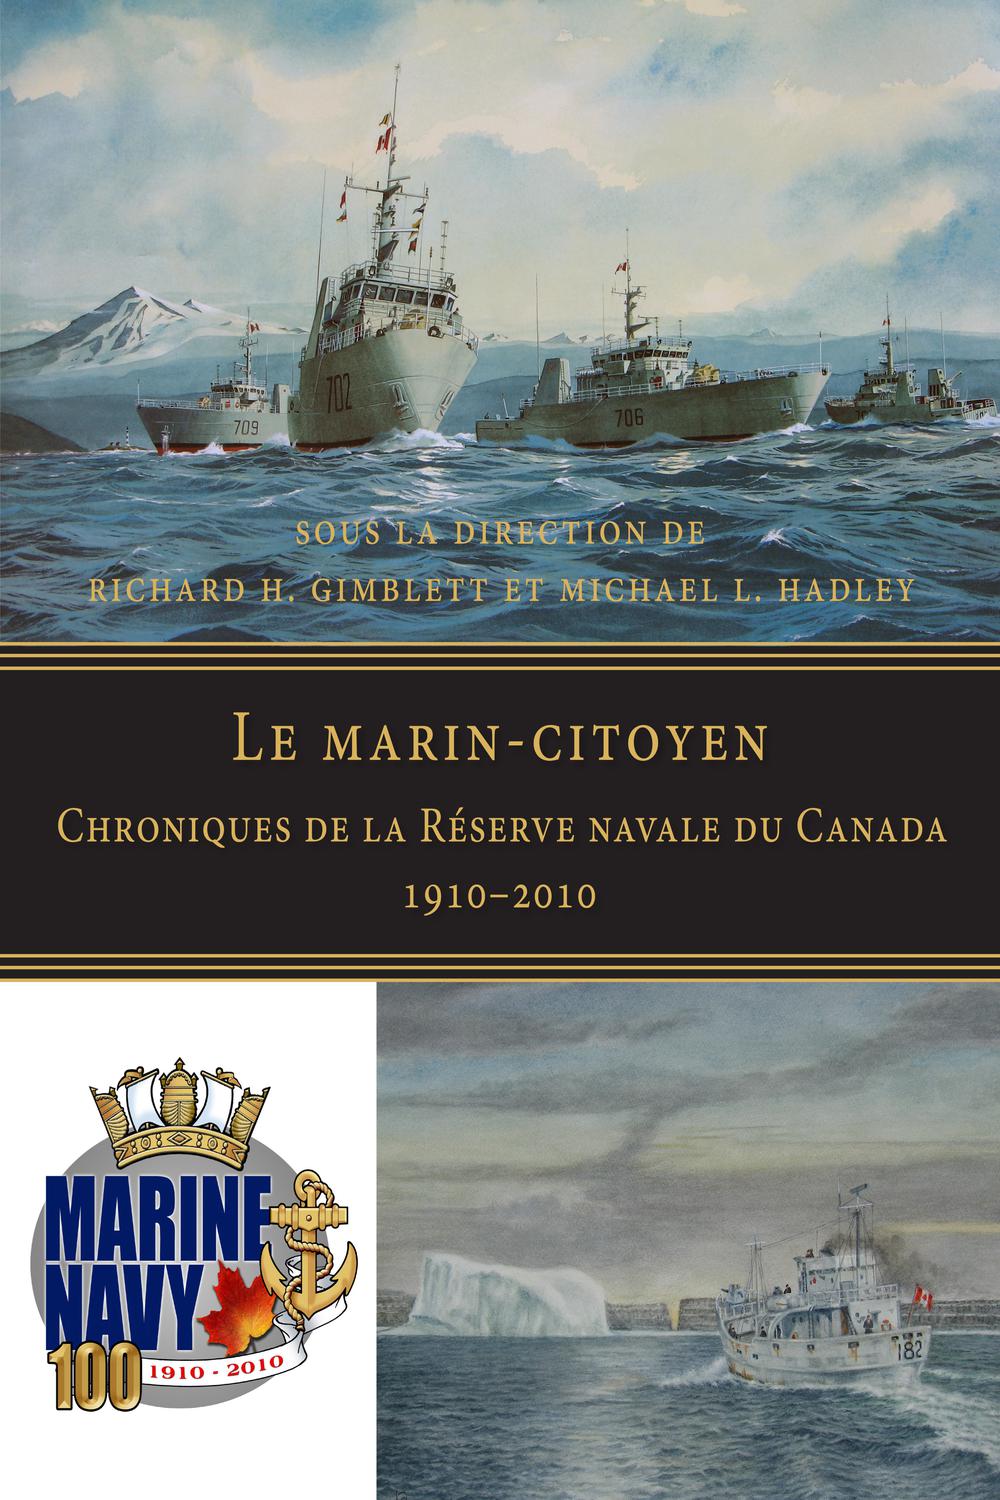 Le marin-citoyen - Michael L. Hadley, Richard H. Gimblett